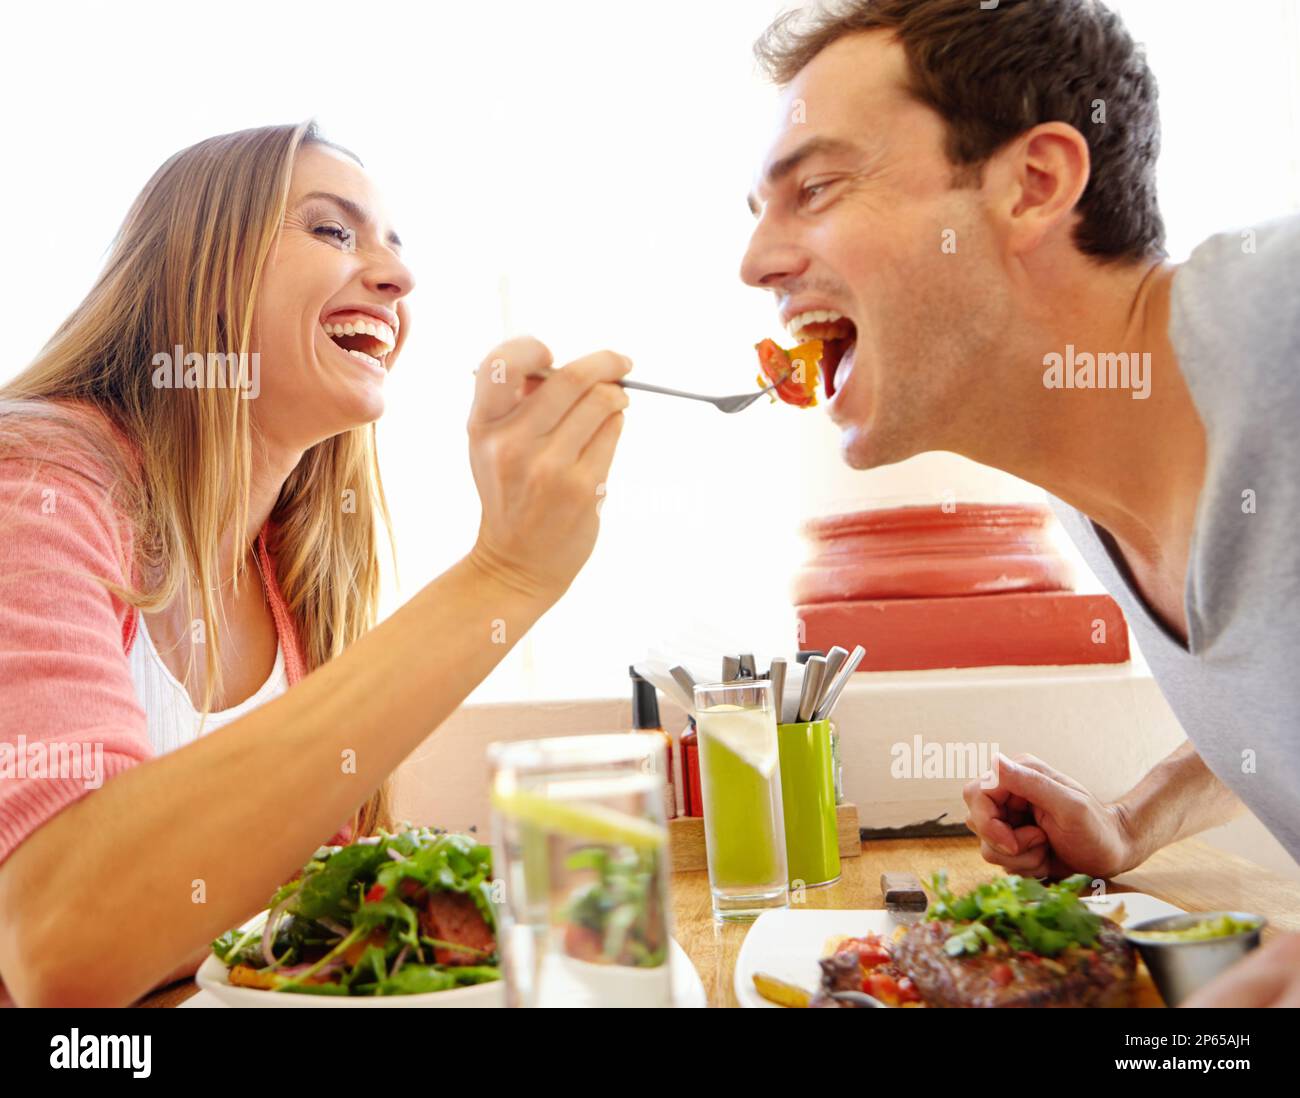 Das Geschmackserlebnis teilen. Eine glückliche junge Frau, die ihrem Freund einen Happen ihres Essens in einem Restaurant anbietet. Stockfoto